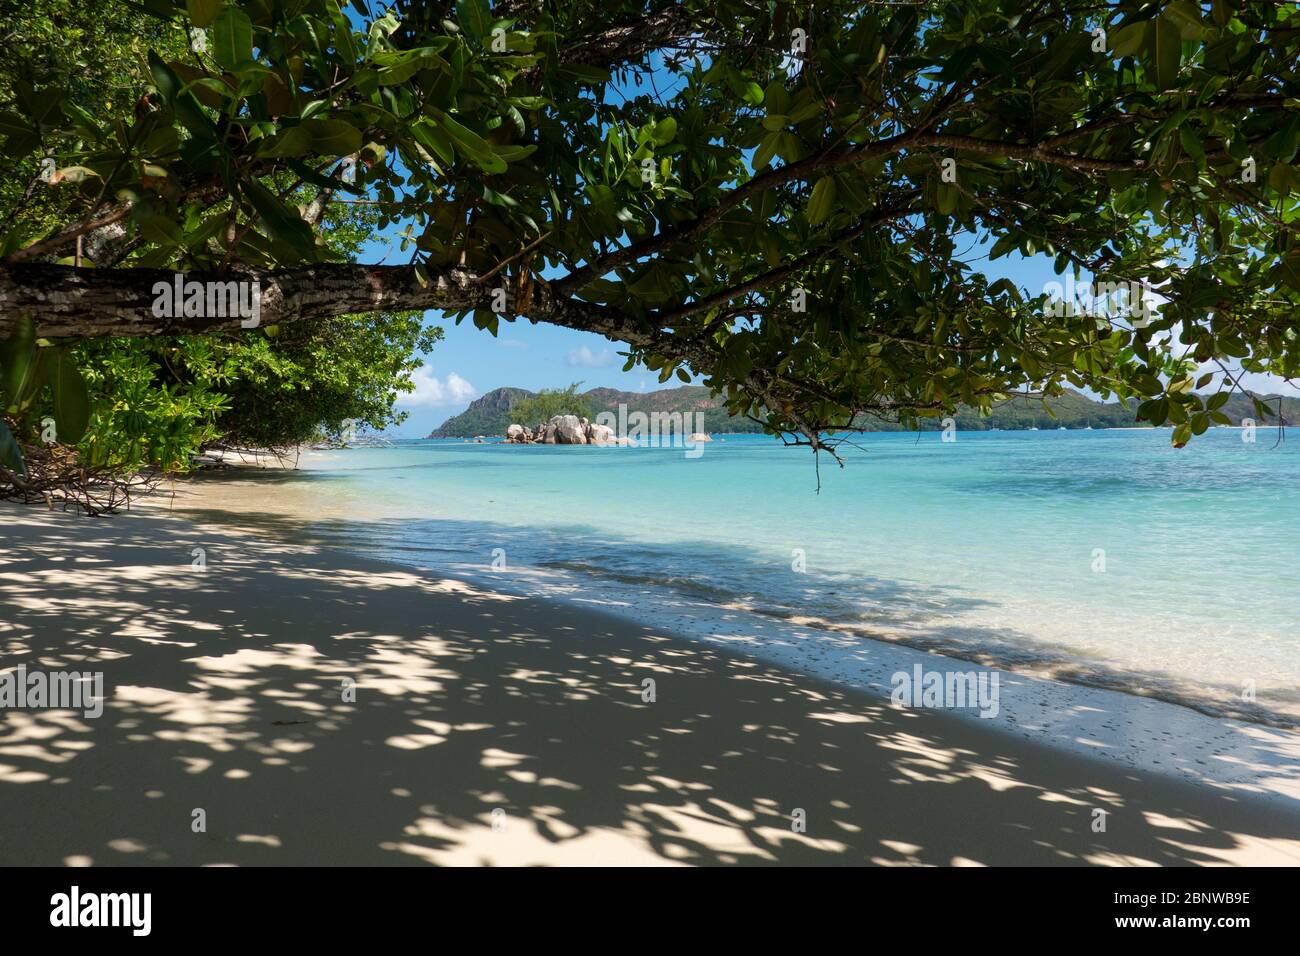 Les Seychelles sont une île archipel de l'océan Indien. Un groupe de 44 îles granitiques et coralines. Un paradis pour les voyageurs Banque D'Images